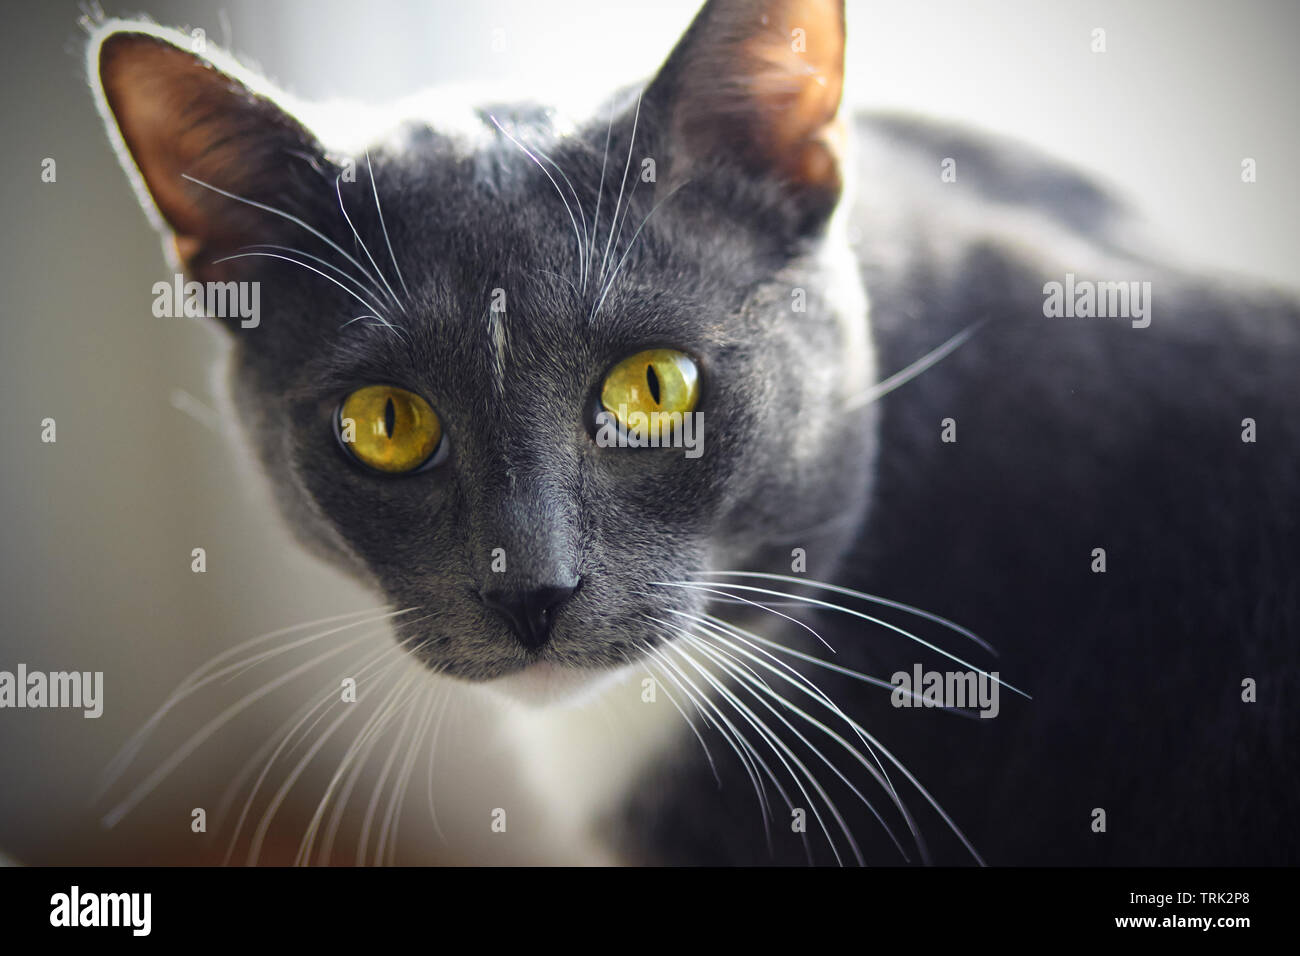 Ein schönes Zuhause Katze der Farbe grau mit einem weißen Fleck auf der  Stirn und gelb-grüne Augen sieht ausdrücklich Stockfotografie - Alamy